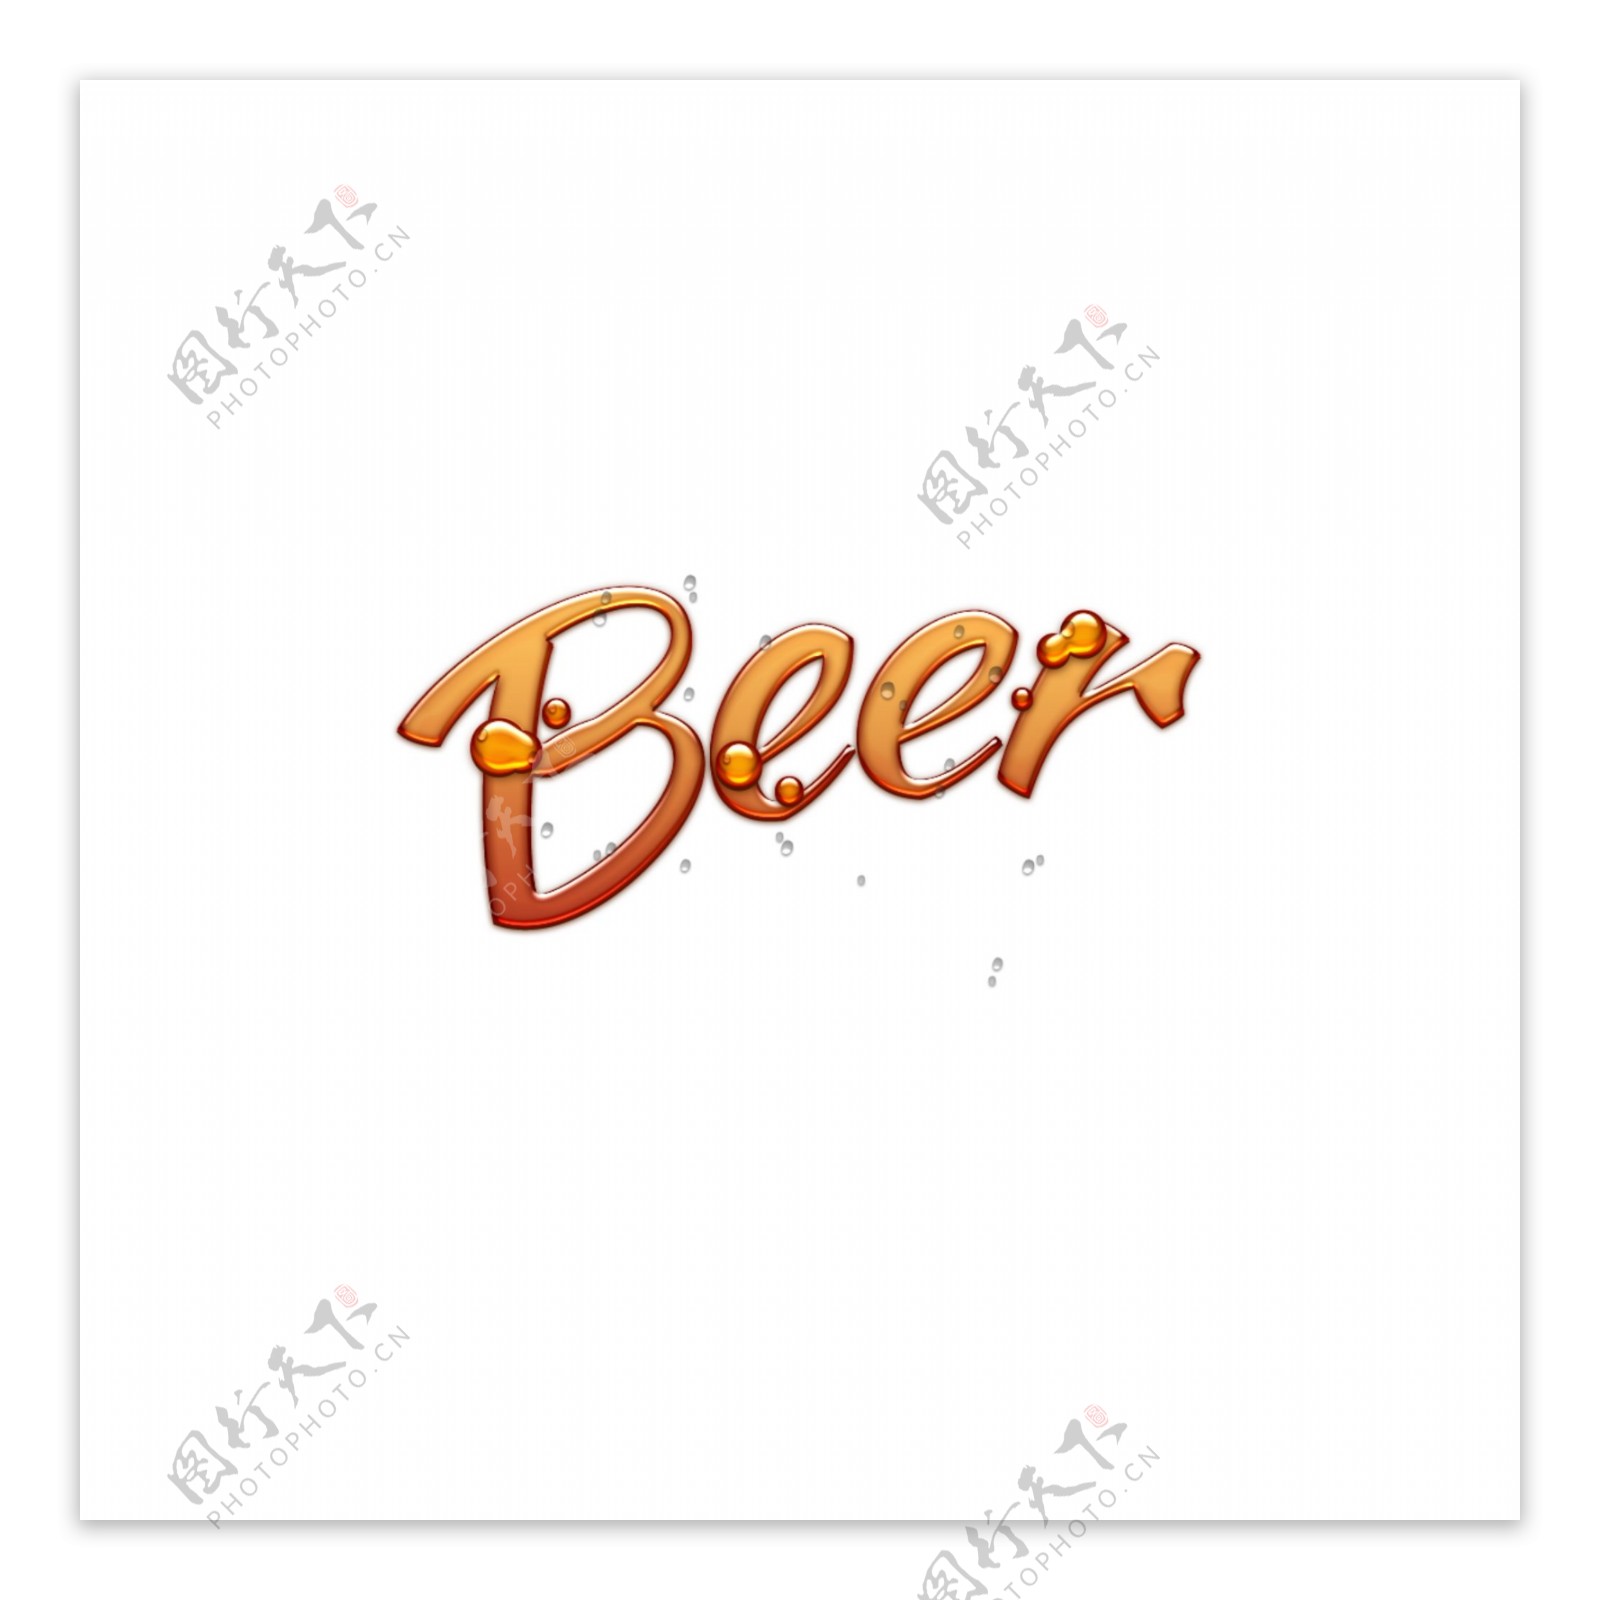 3D啤酒摘要字体设计